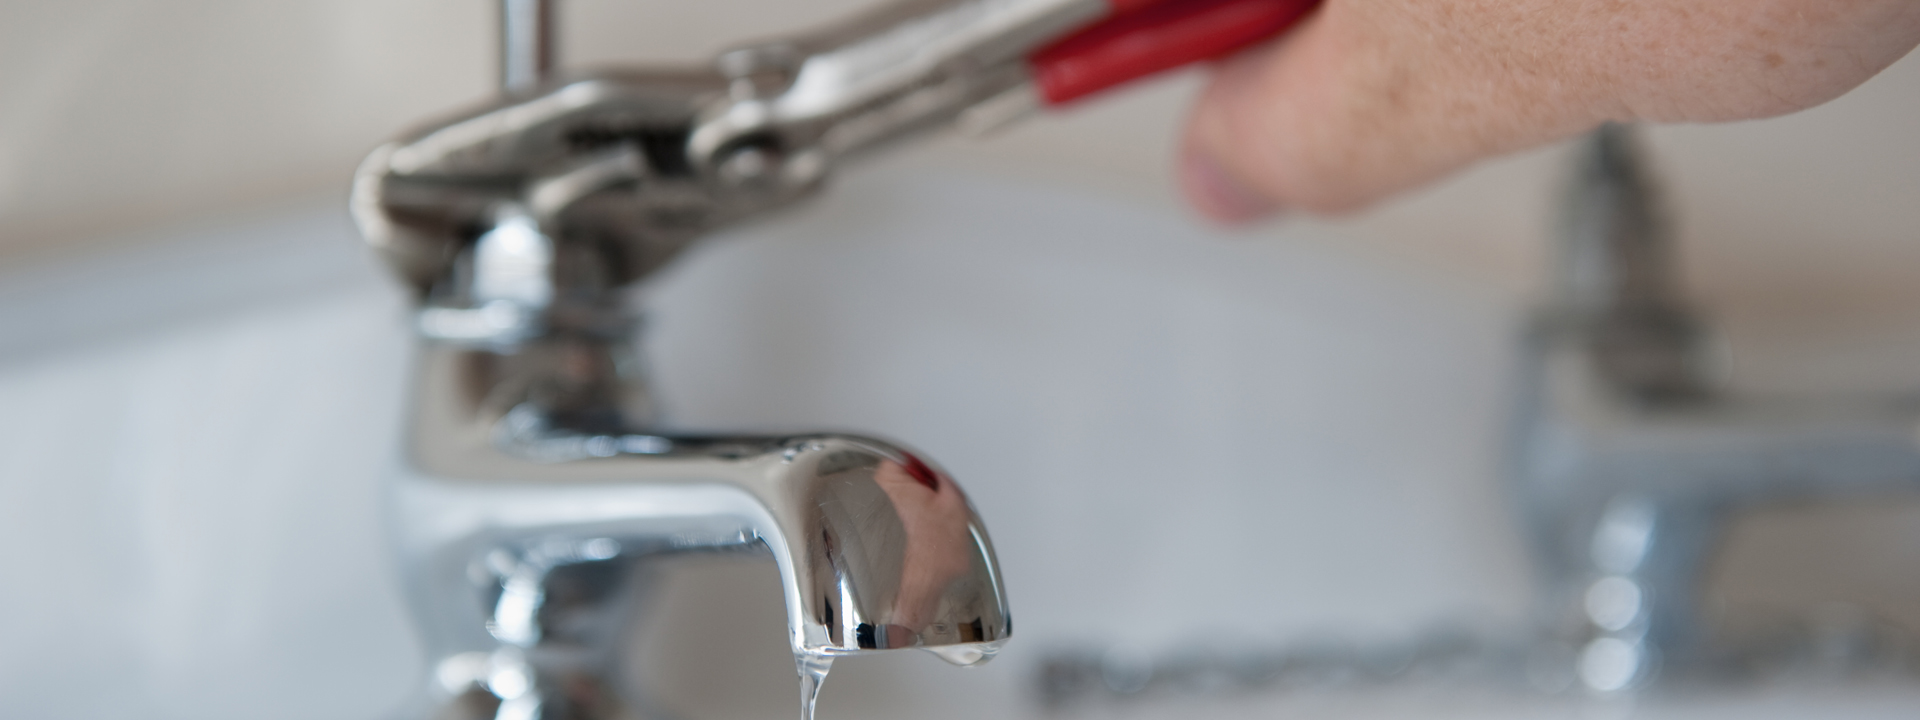 Plumbing Leak Detection: How to Find Hidden Water Leaks